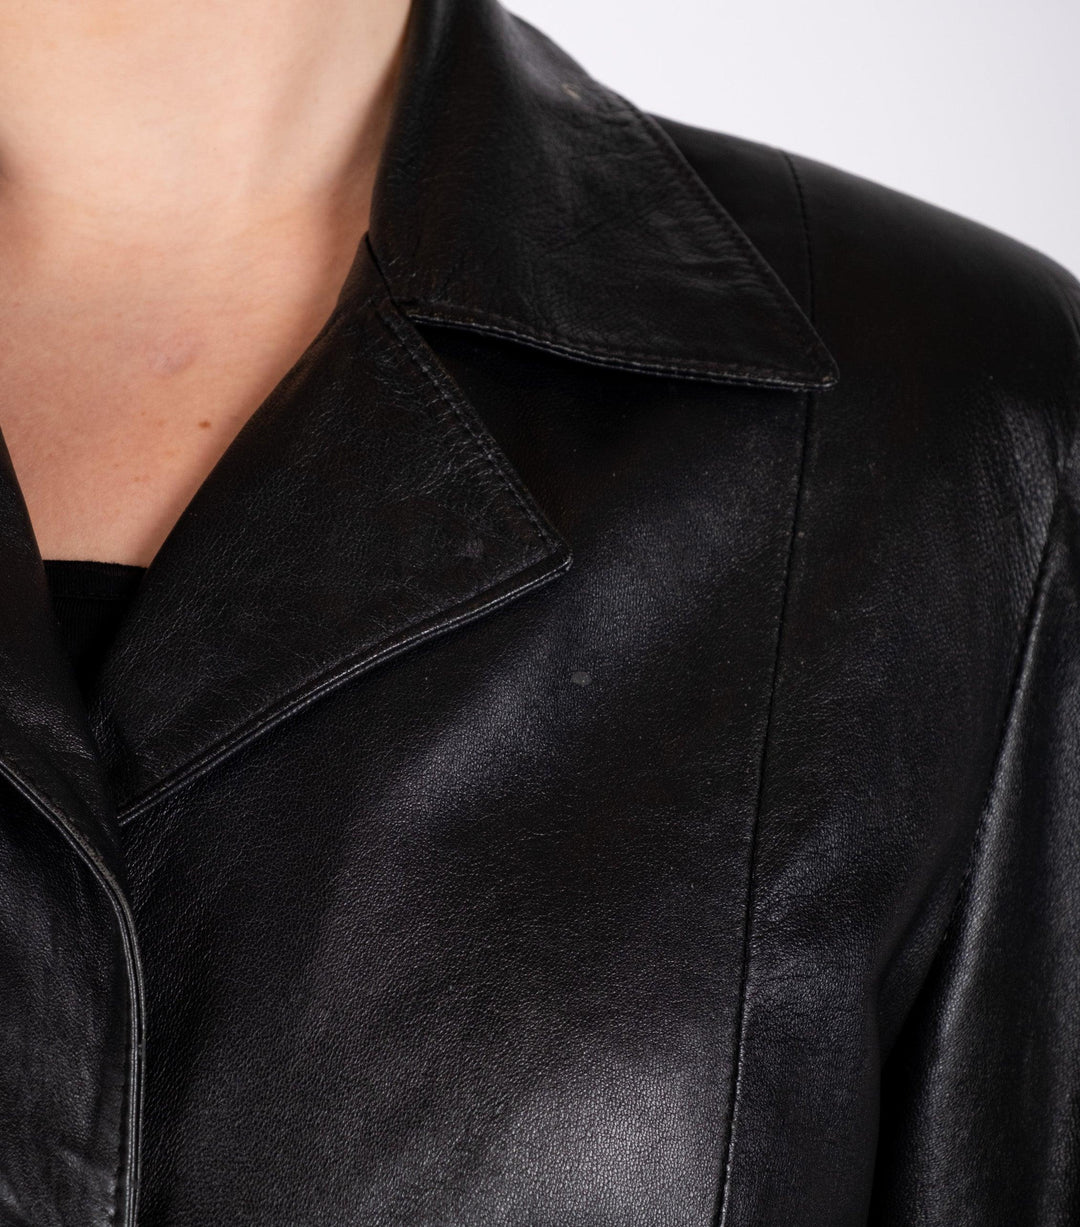 Black Leather Jacket - Volver